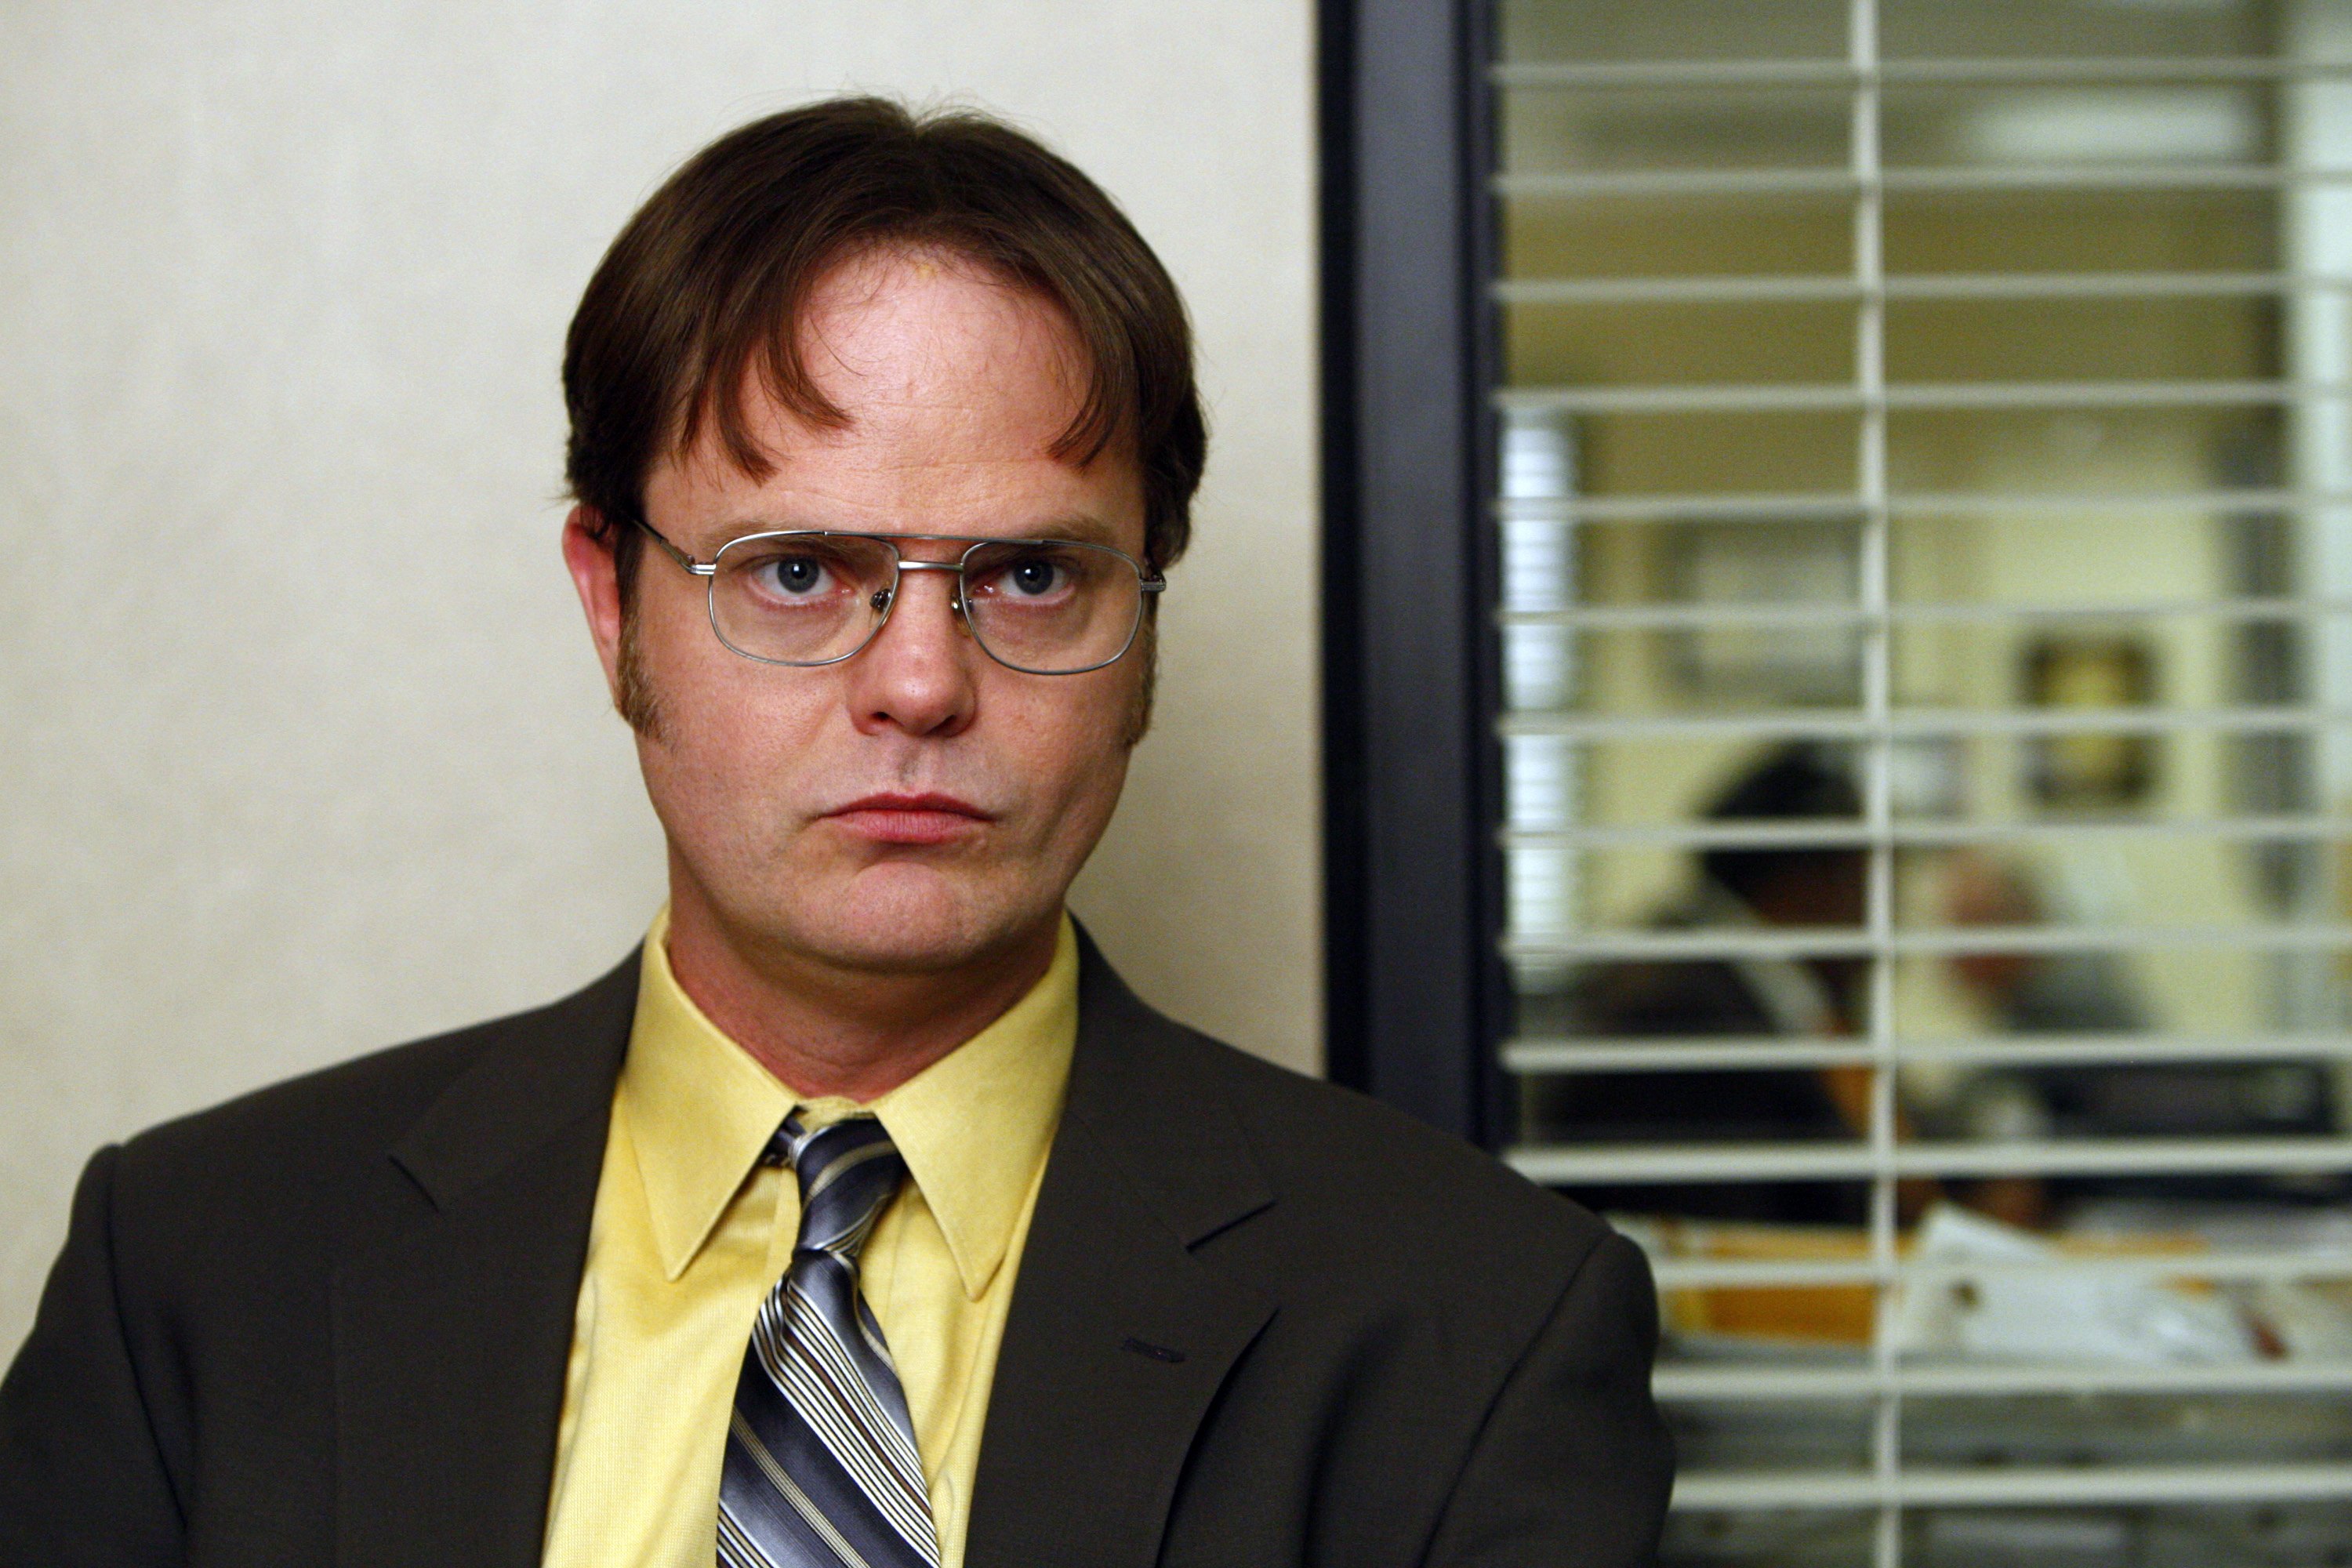 Rainn Wilson as Dwight Schrute in a talking head from 'The Office'